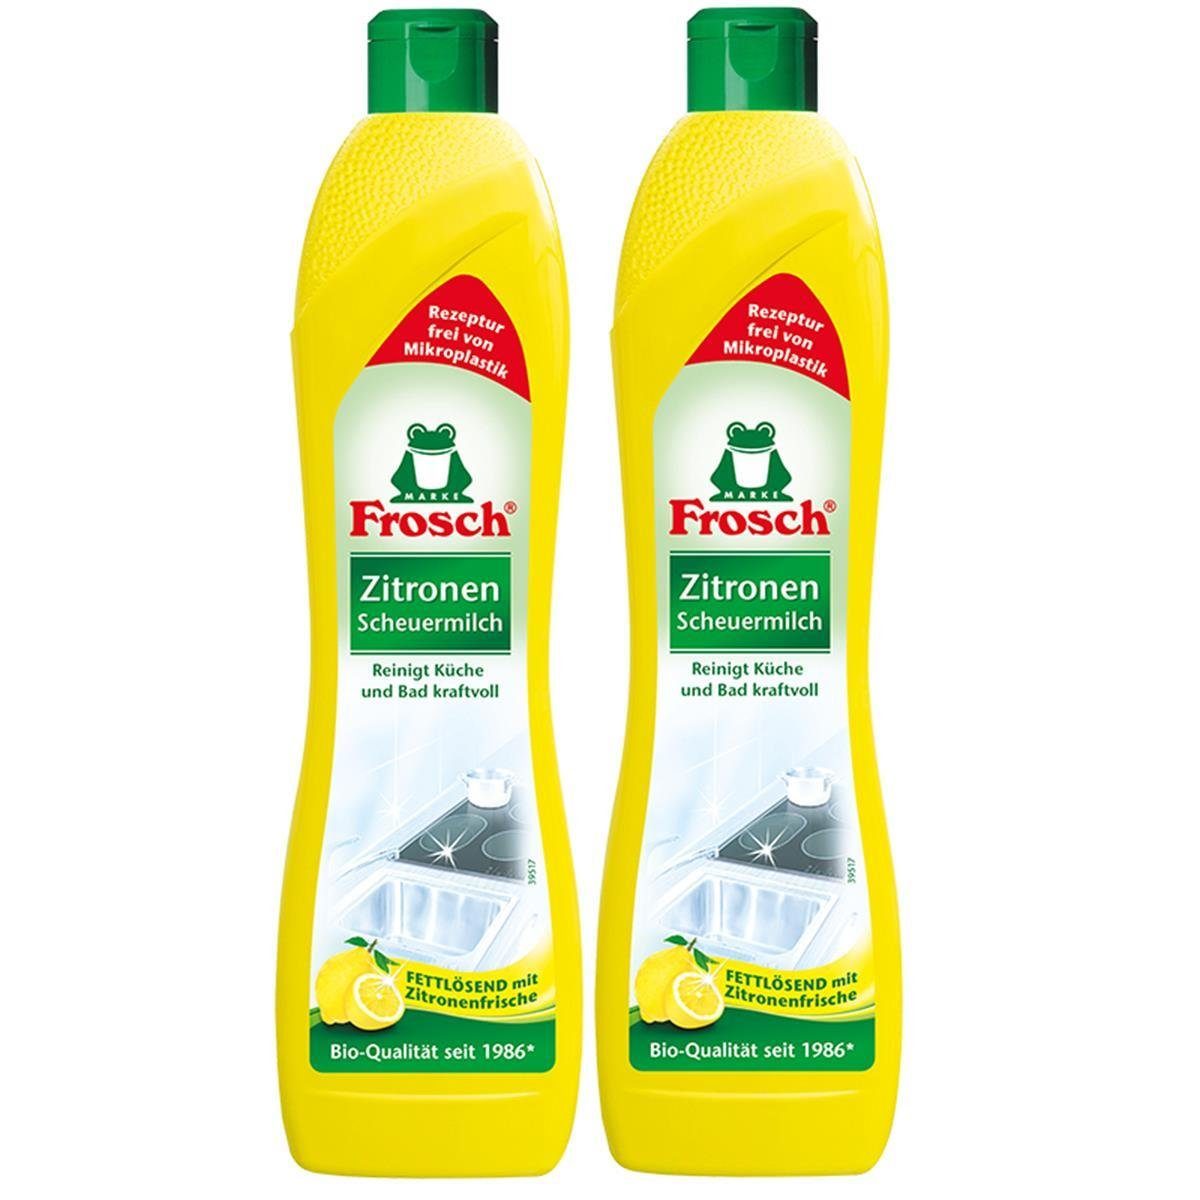 FROSCH 2x Frosch Zitronen Scheuermilch 500 ml - Reinigt Bad und Küche kraftvo Spezialwaschmittel